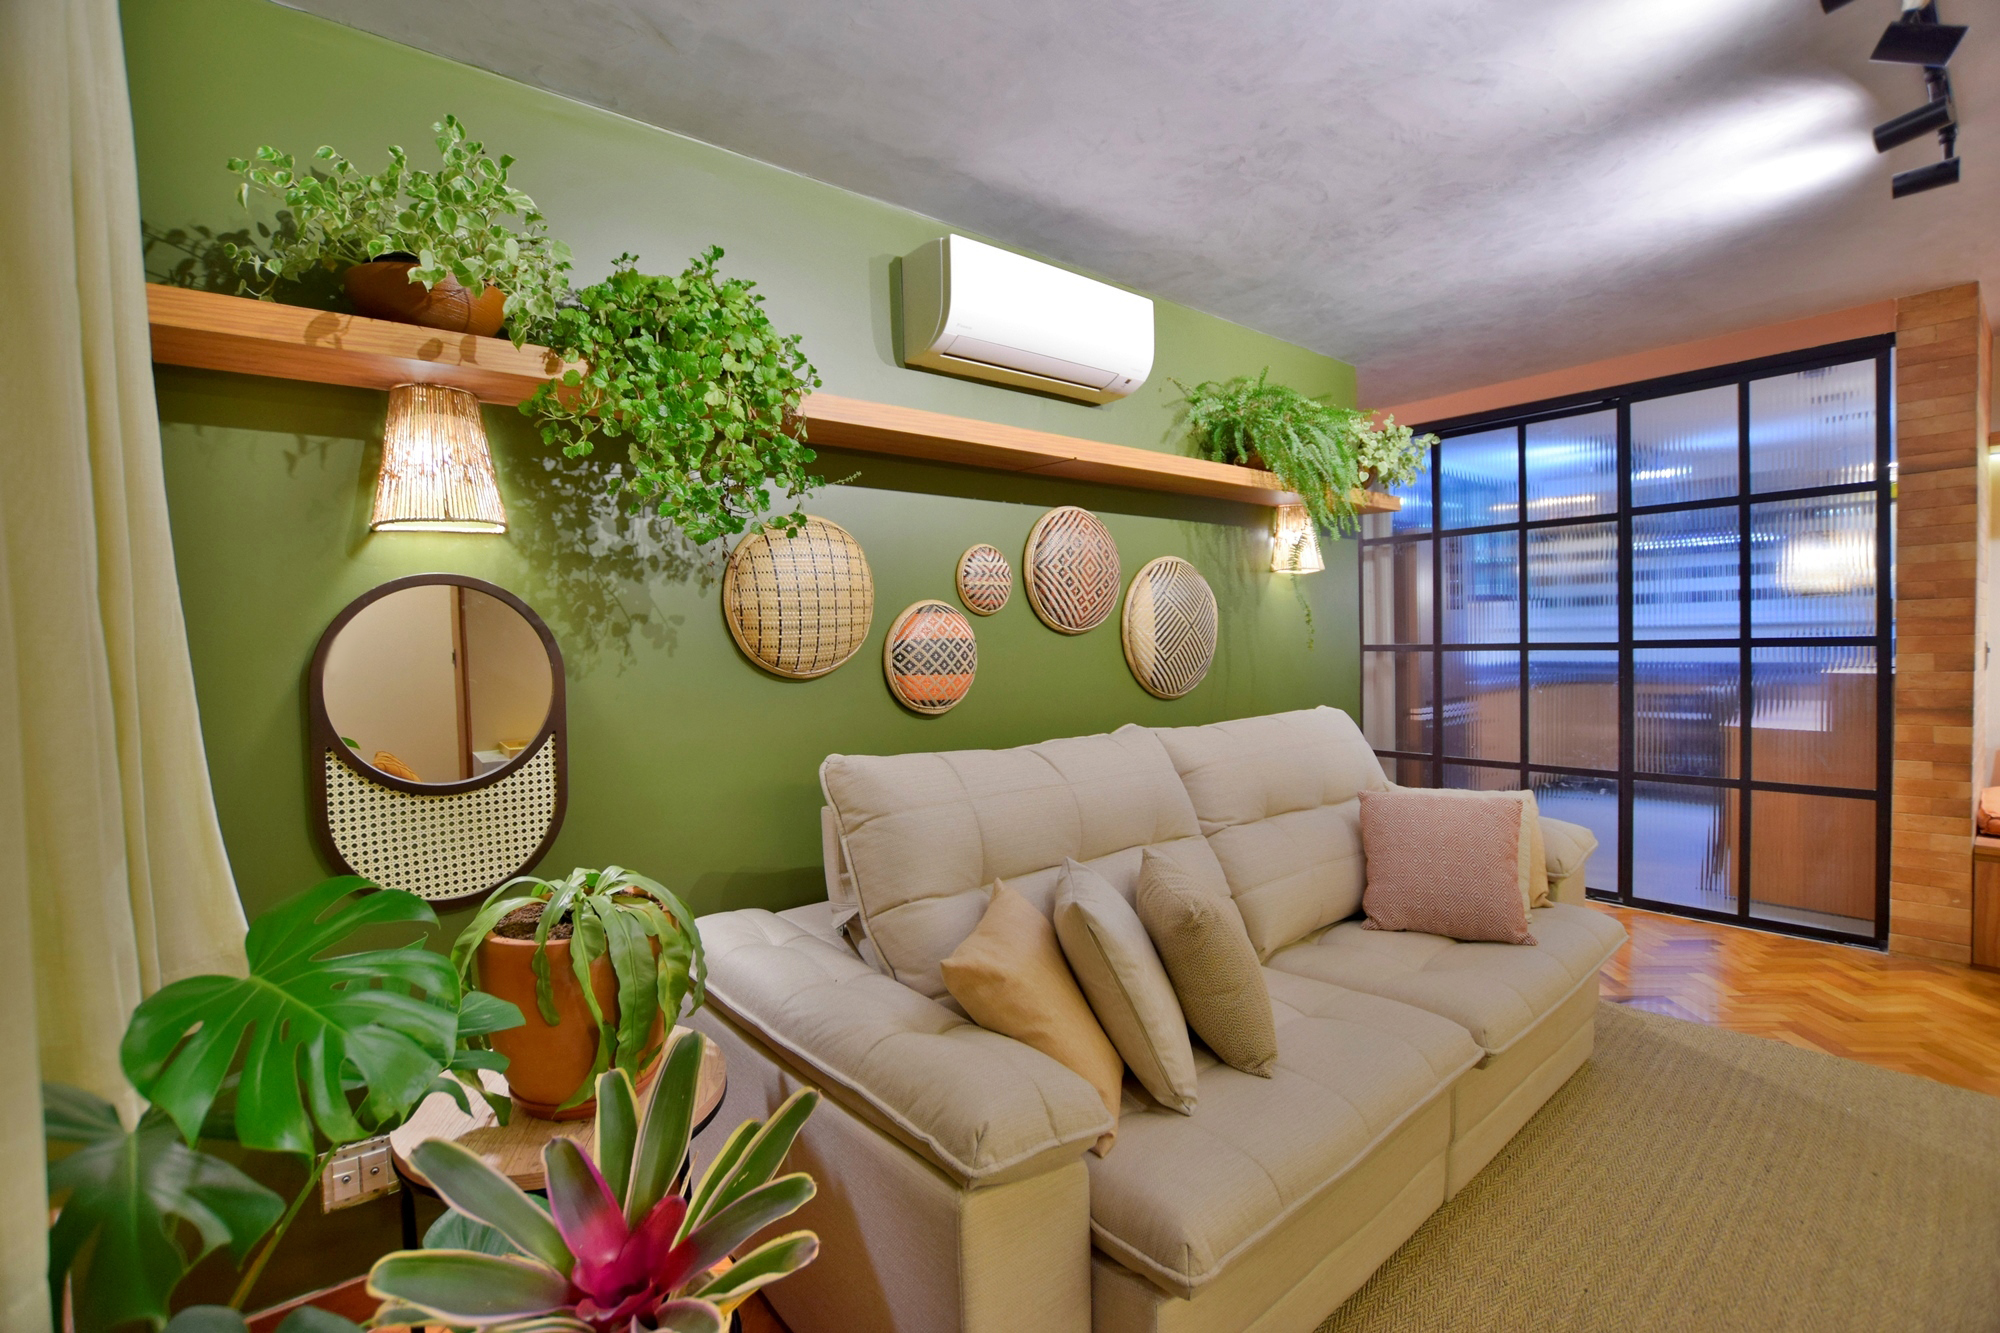 Sala de estar; plantas; sofá branco; parede verde